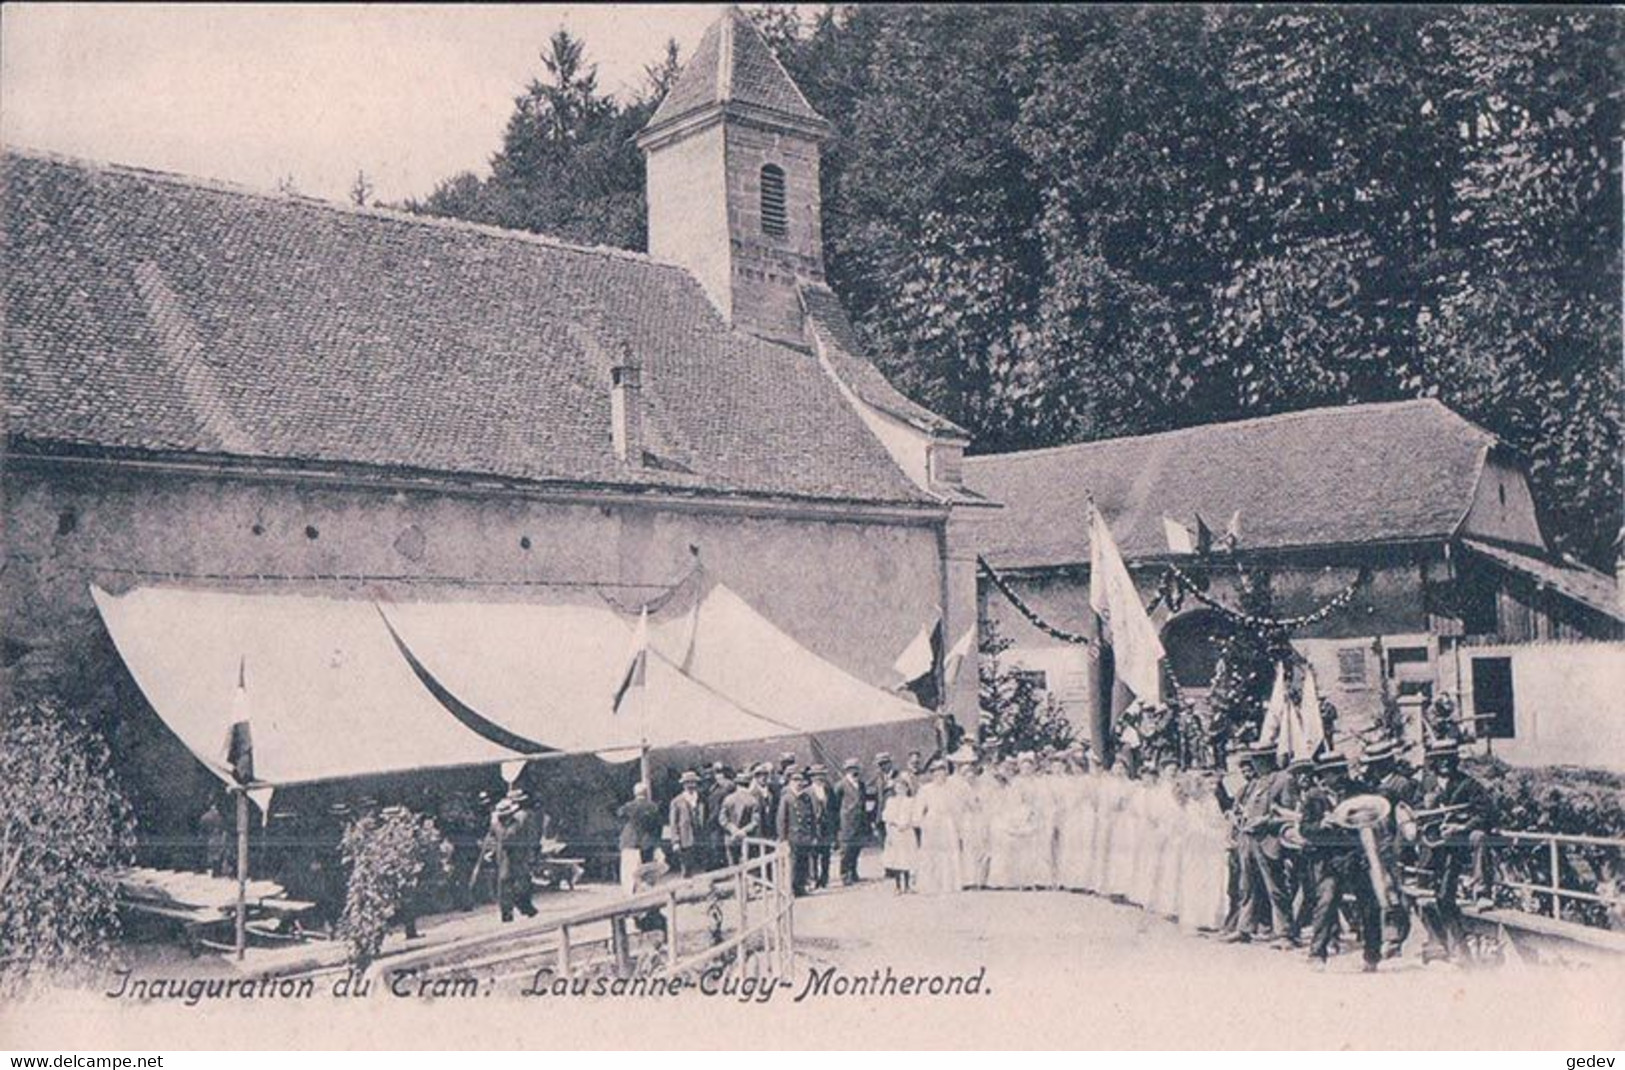 Lausanne Cugy Montherond, Chemin De Fer, Inauguration Du Tram, Fanfare Et Festivité (7310) - Cugy